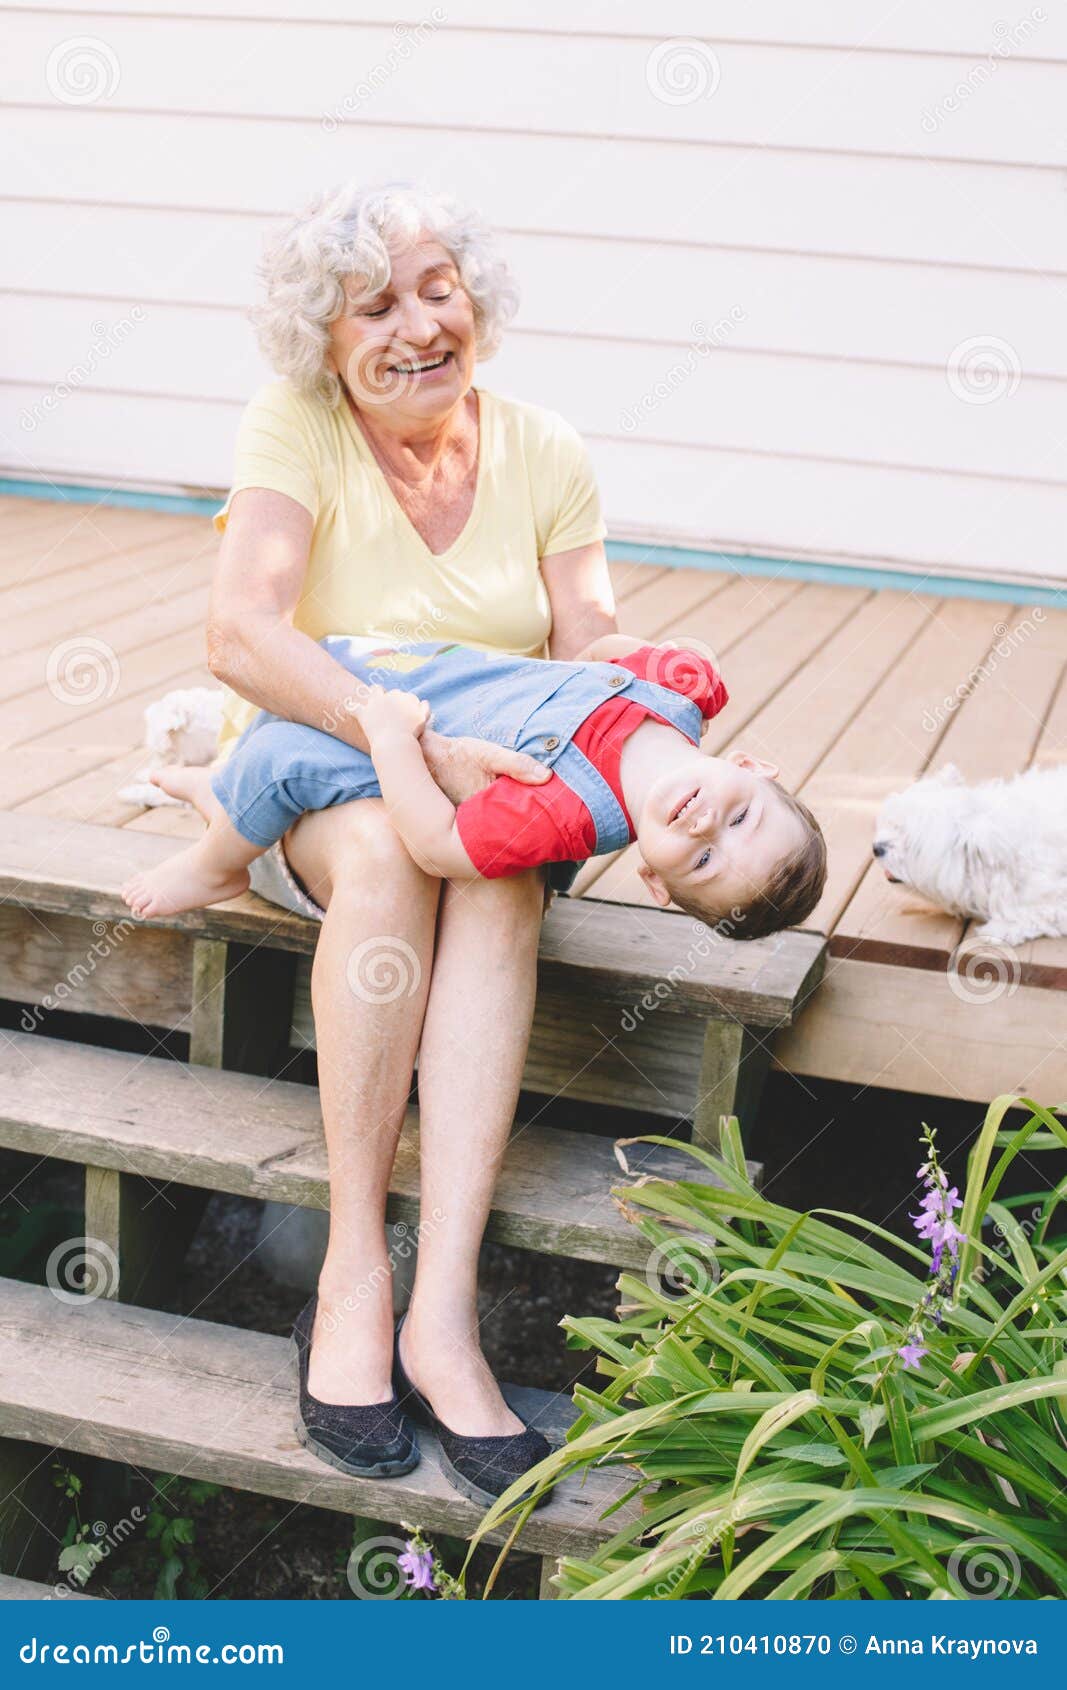 Menina com sua avó jogando jogo jenga em casa [download] - Designi